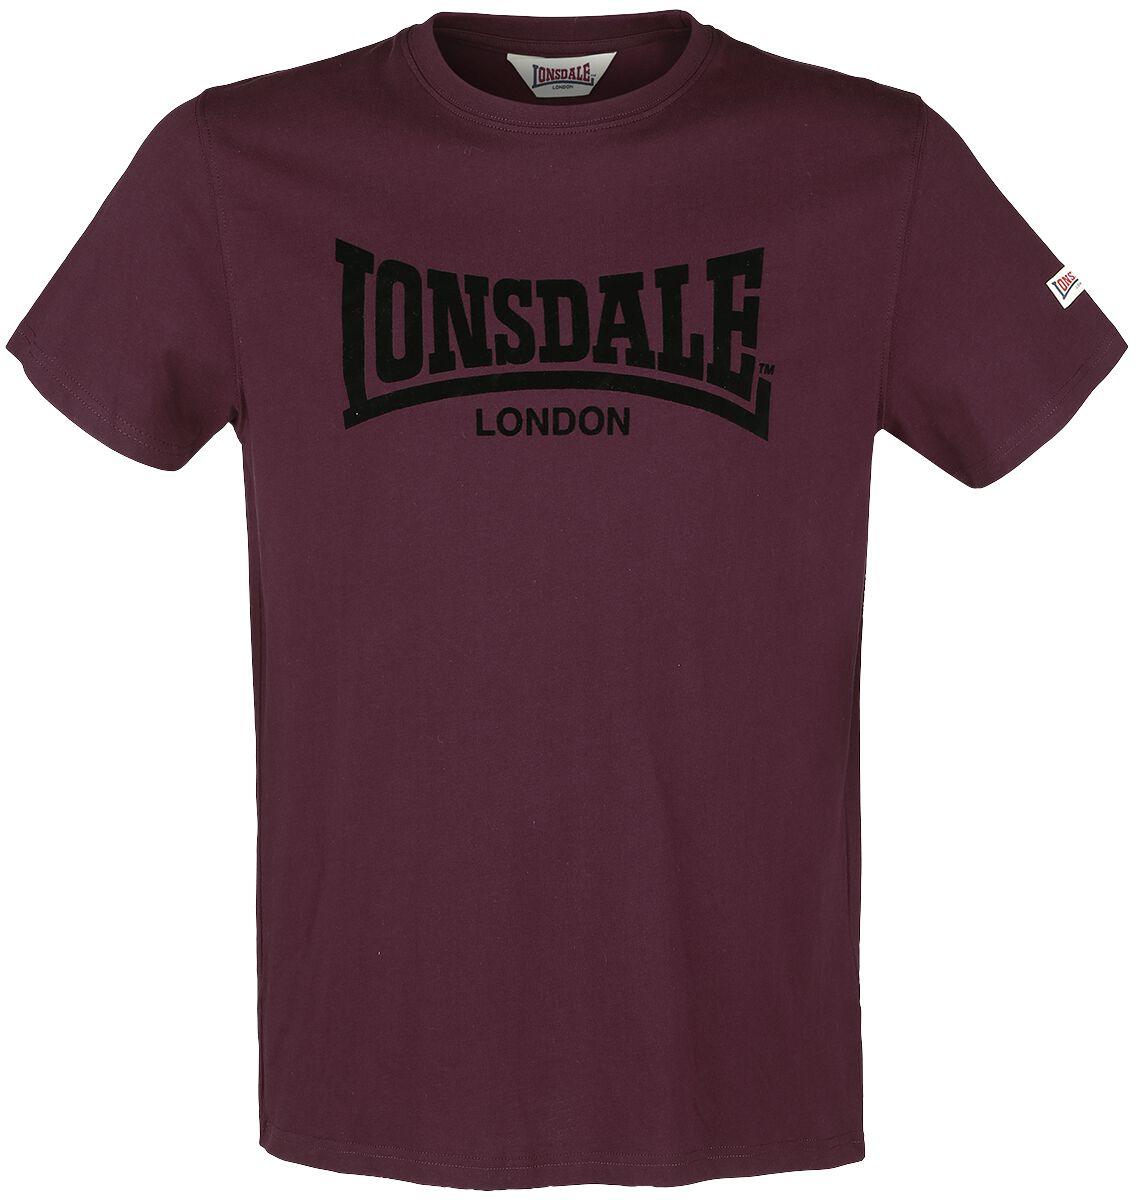 Lonsdale London LL008 One Tone T-Shirt bordeaux in M von Lonsdale London